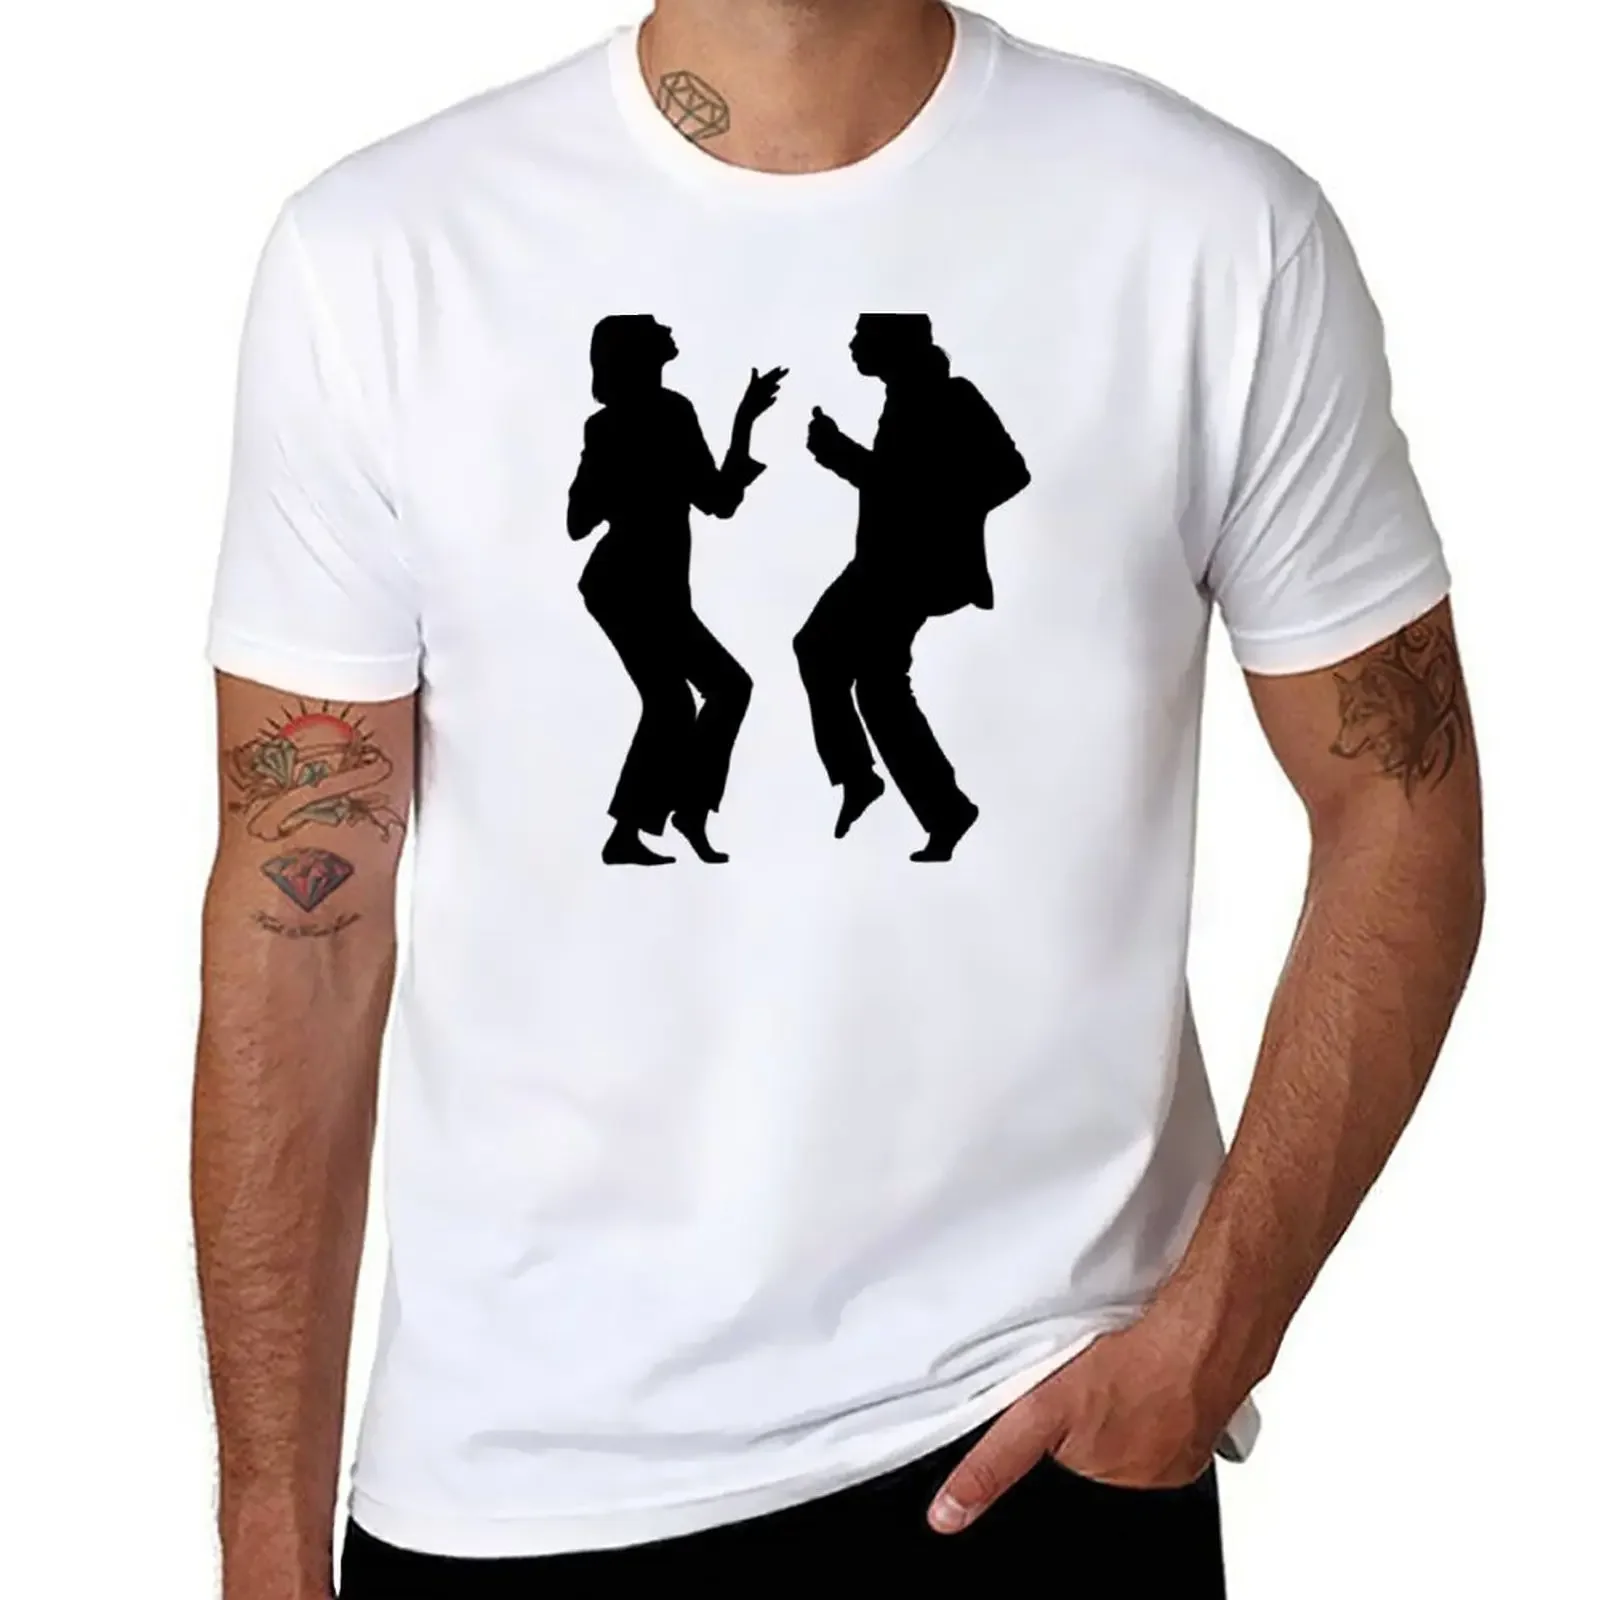 

Pulp Fiction Dancing T-Shirt oversized cute tops tops designer t shirt men